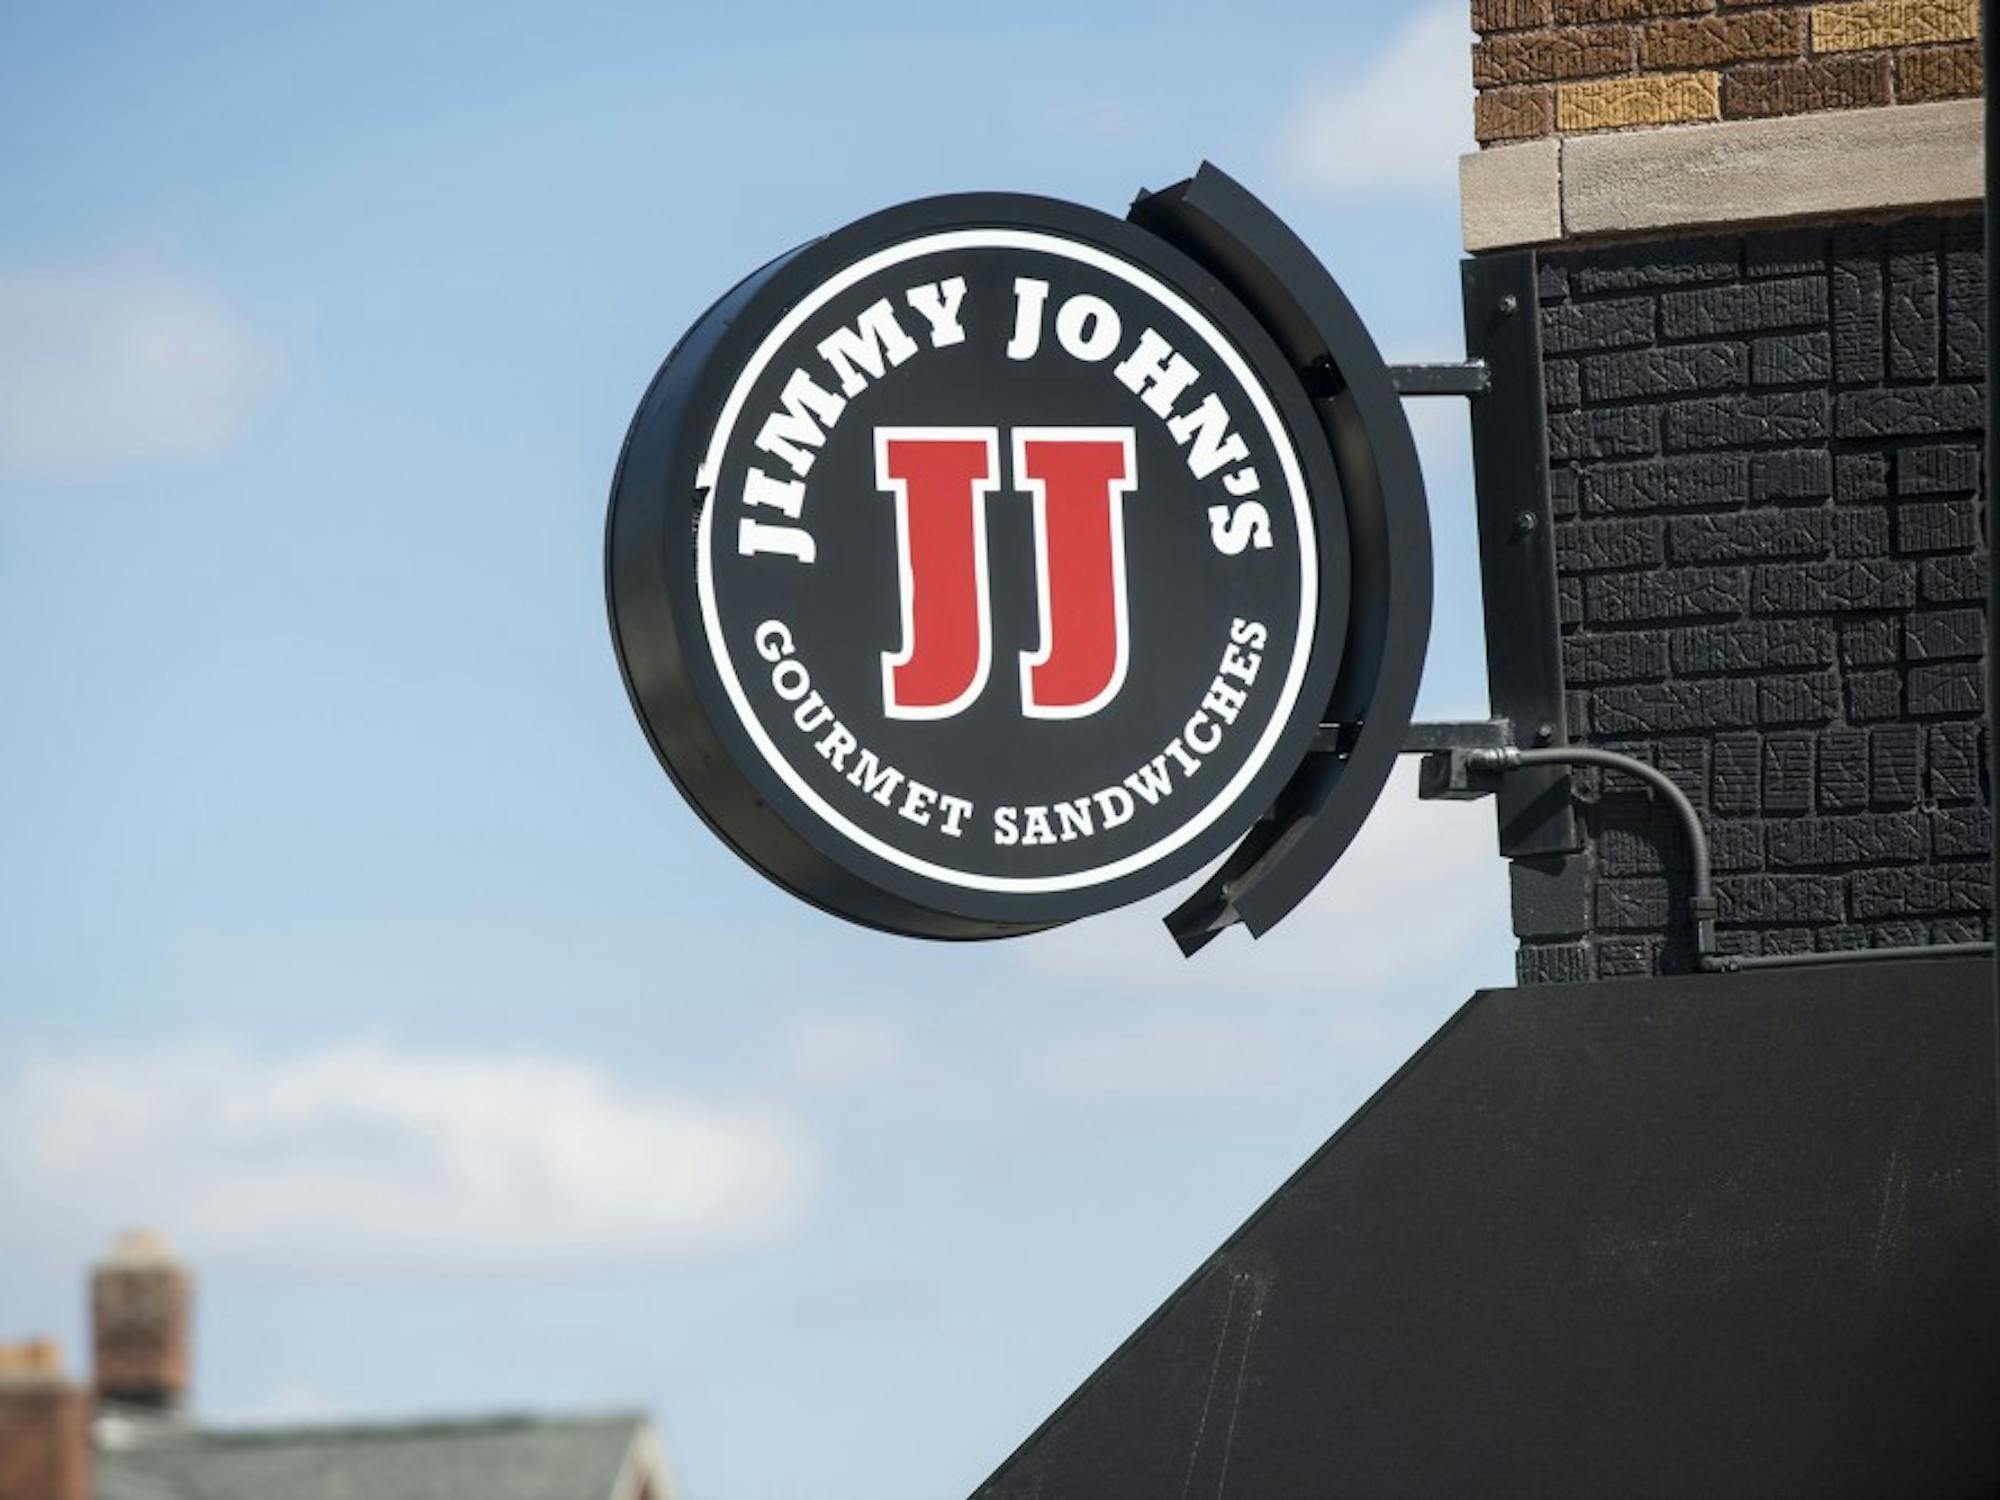 Jimmy John's on Cross Street in Ypsilanti.